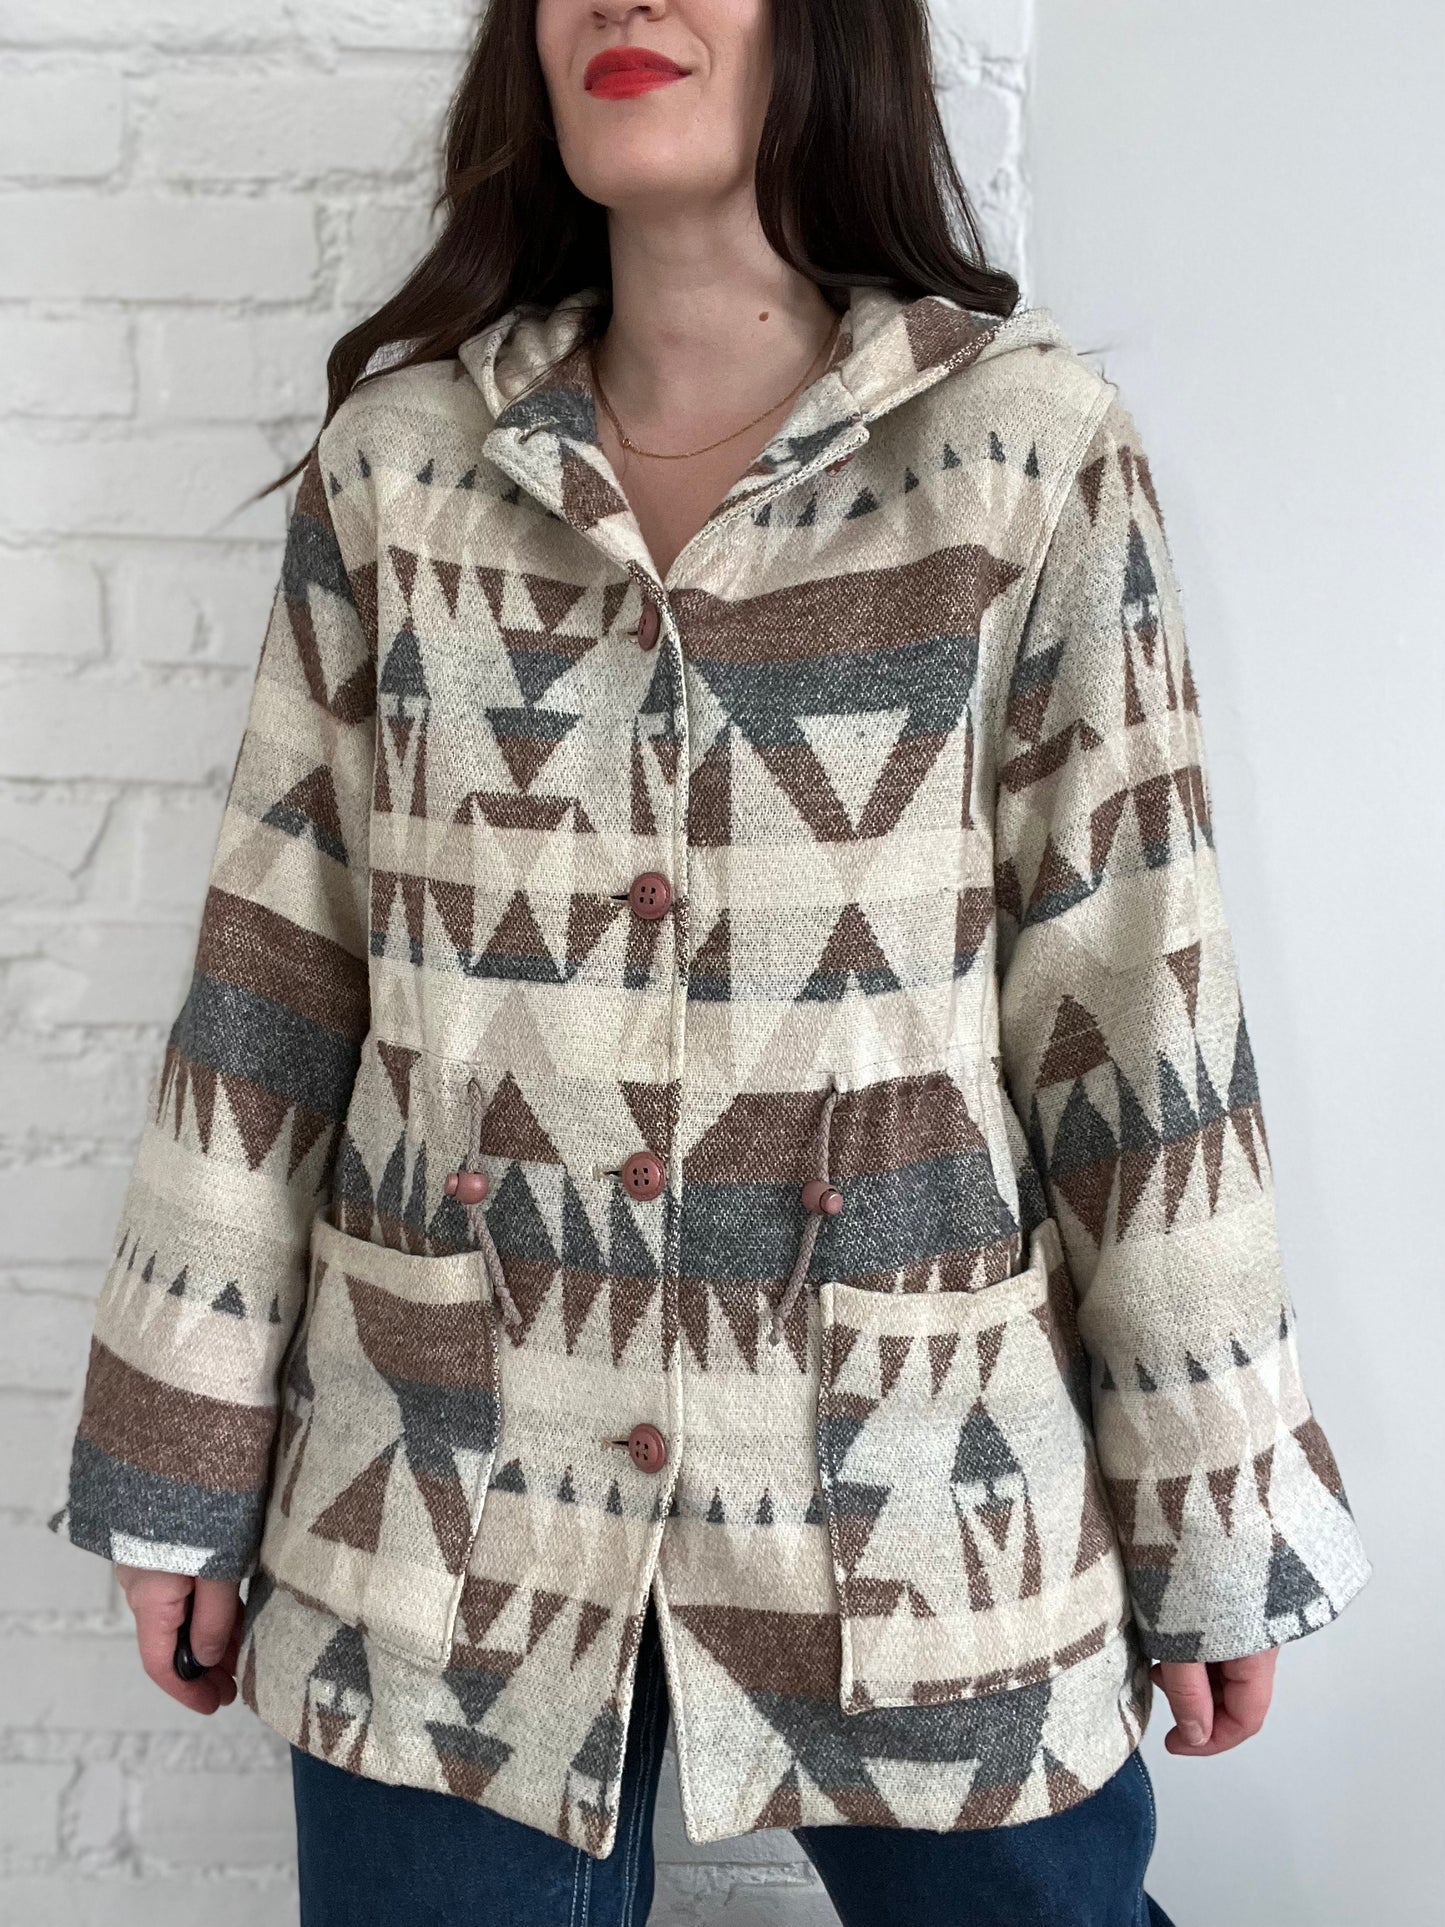 Vintage Wool Geometric Spring Jacket - S/M